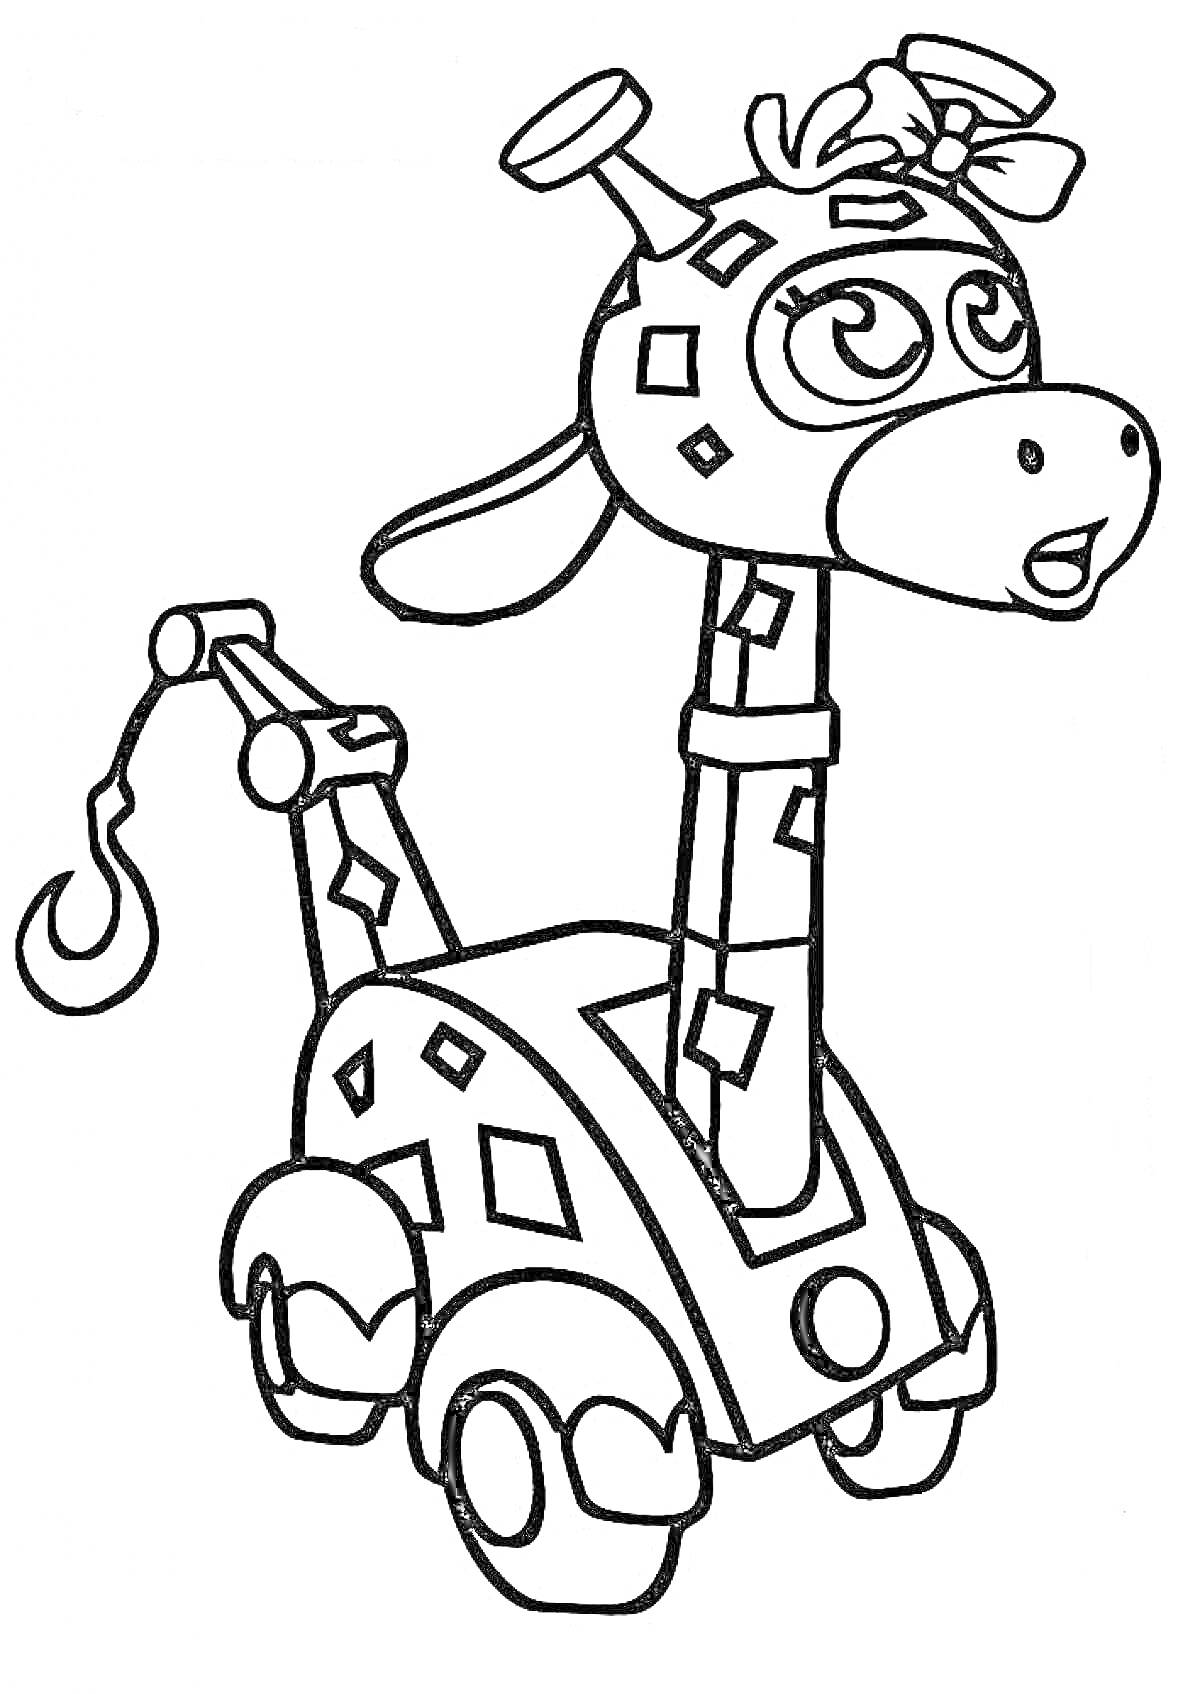 Жираф-машина с бантом на голове из мультфильма Врумиз